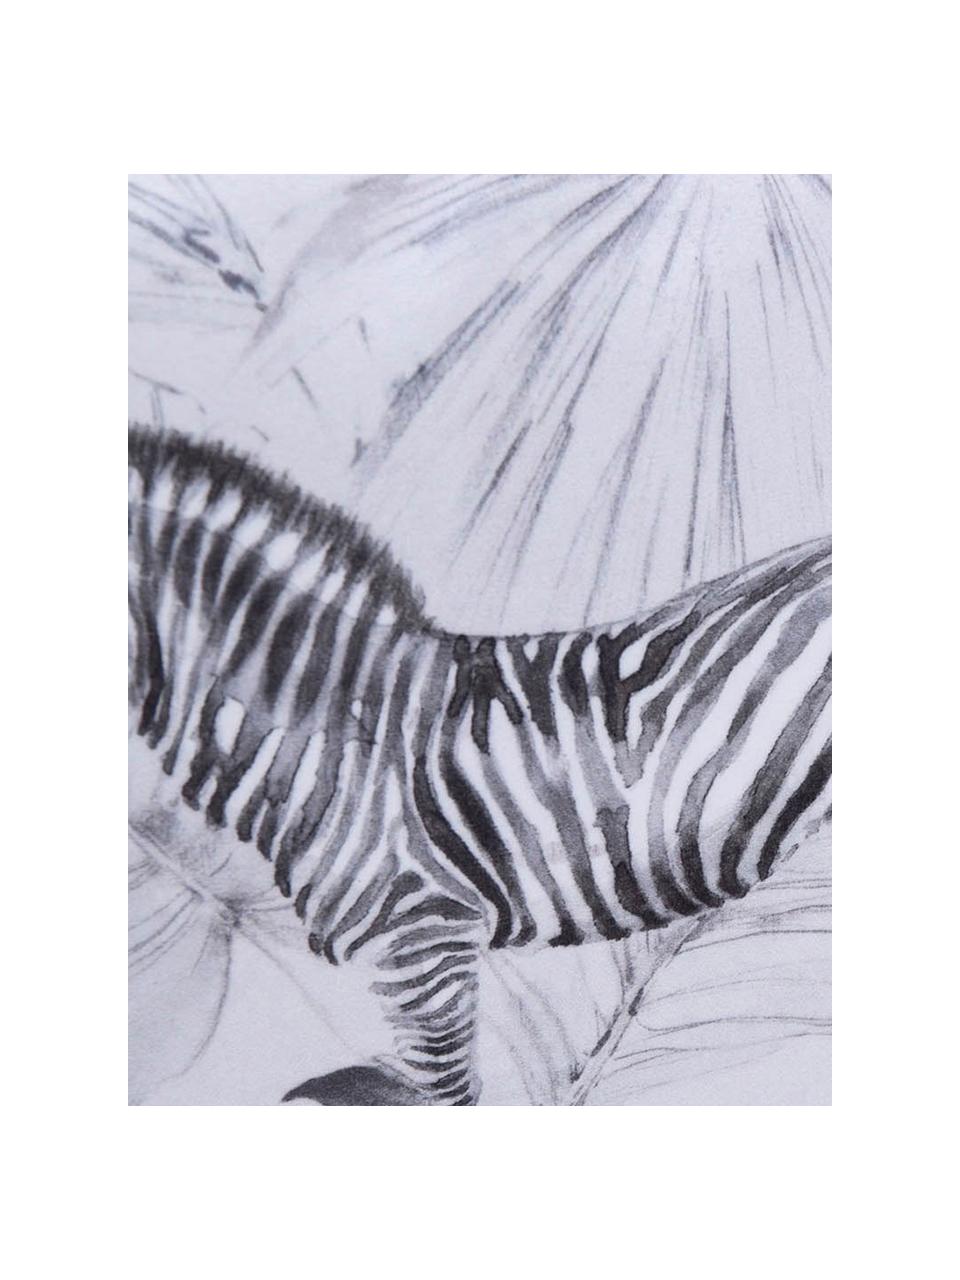 Samt-Kissen Zebra, mit Inlett, 100% Polyestersamt, Weiss, Schwarz, 30 x 45 cm